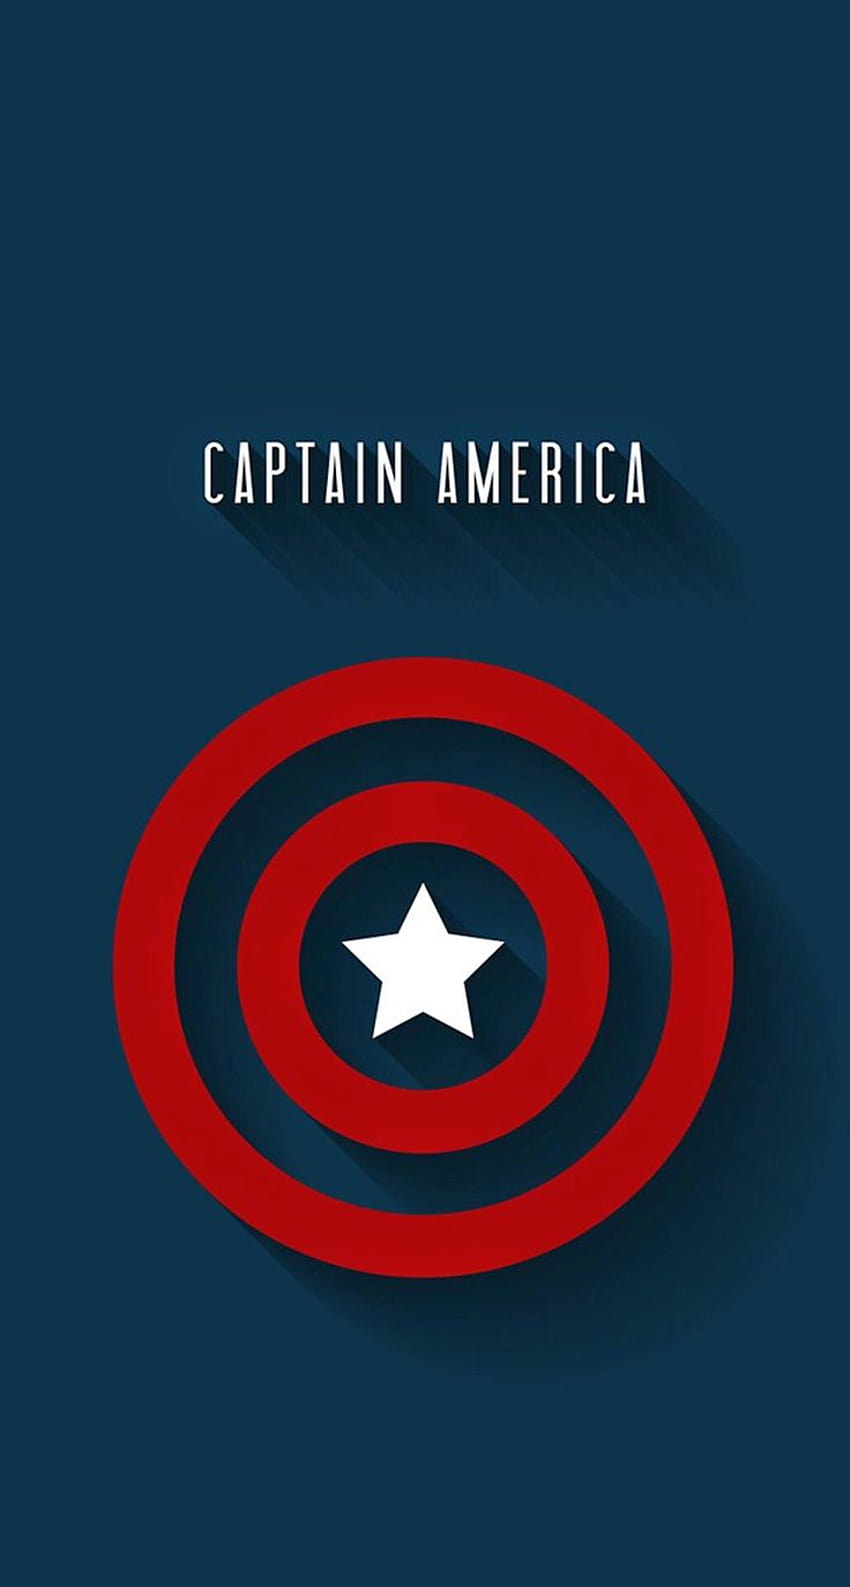 Captain America Cartoon Shield Vector Illustration 6419595 Vector Art at  Vecteezy